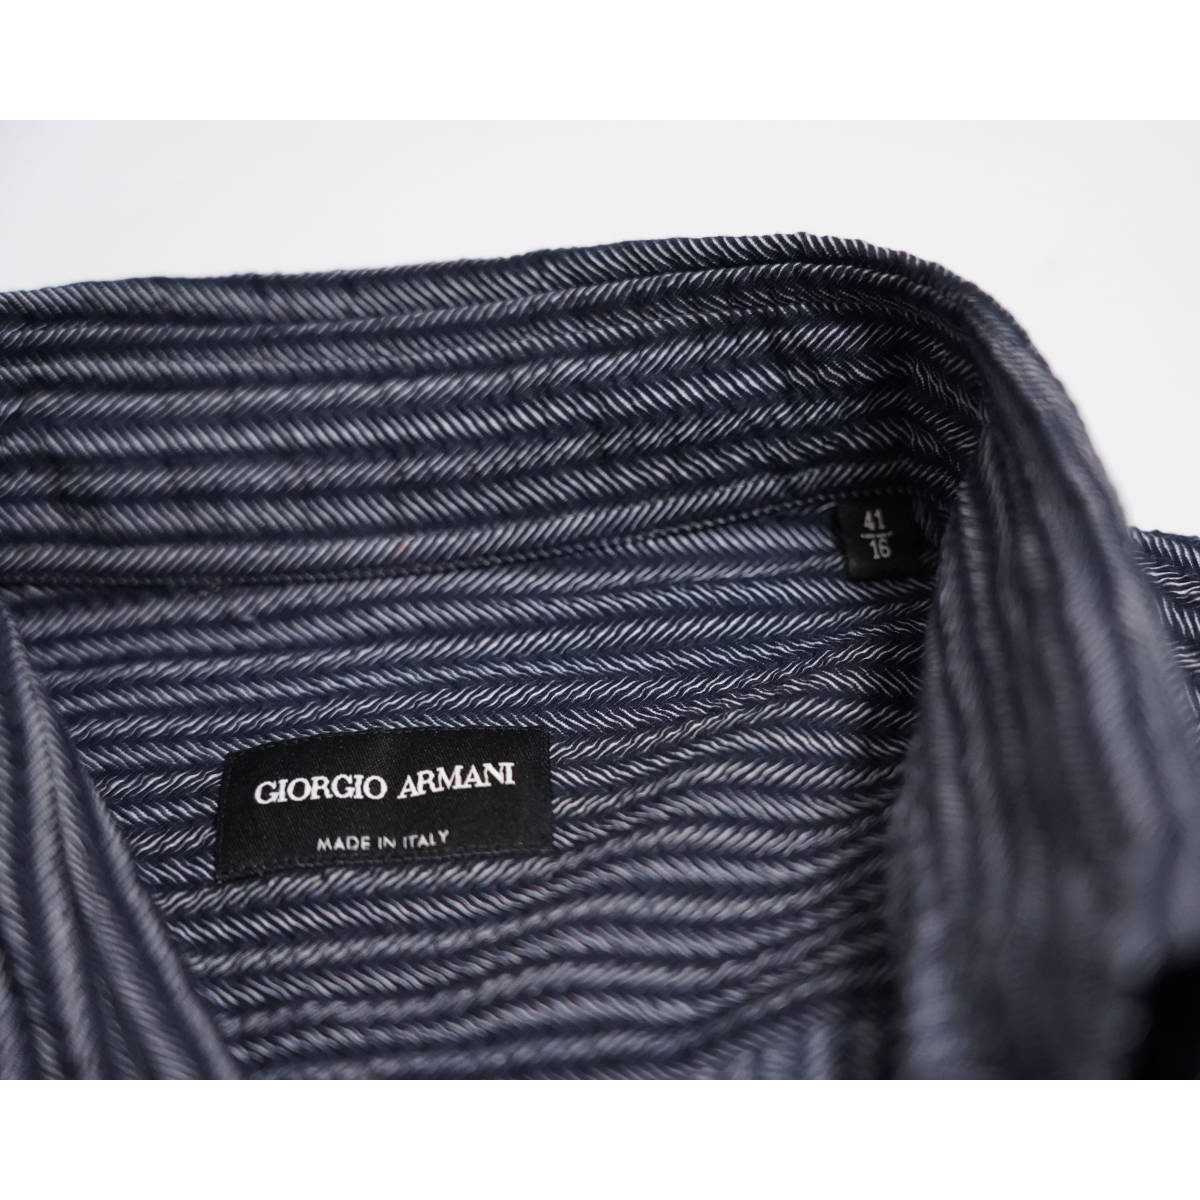  стандартный item супер высококлассный рубашка GIORGIO ARMANI 41 размер рубашка с длинным рукавом M размер joru geo Armani ткань эффект полоса 